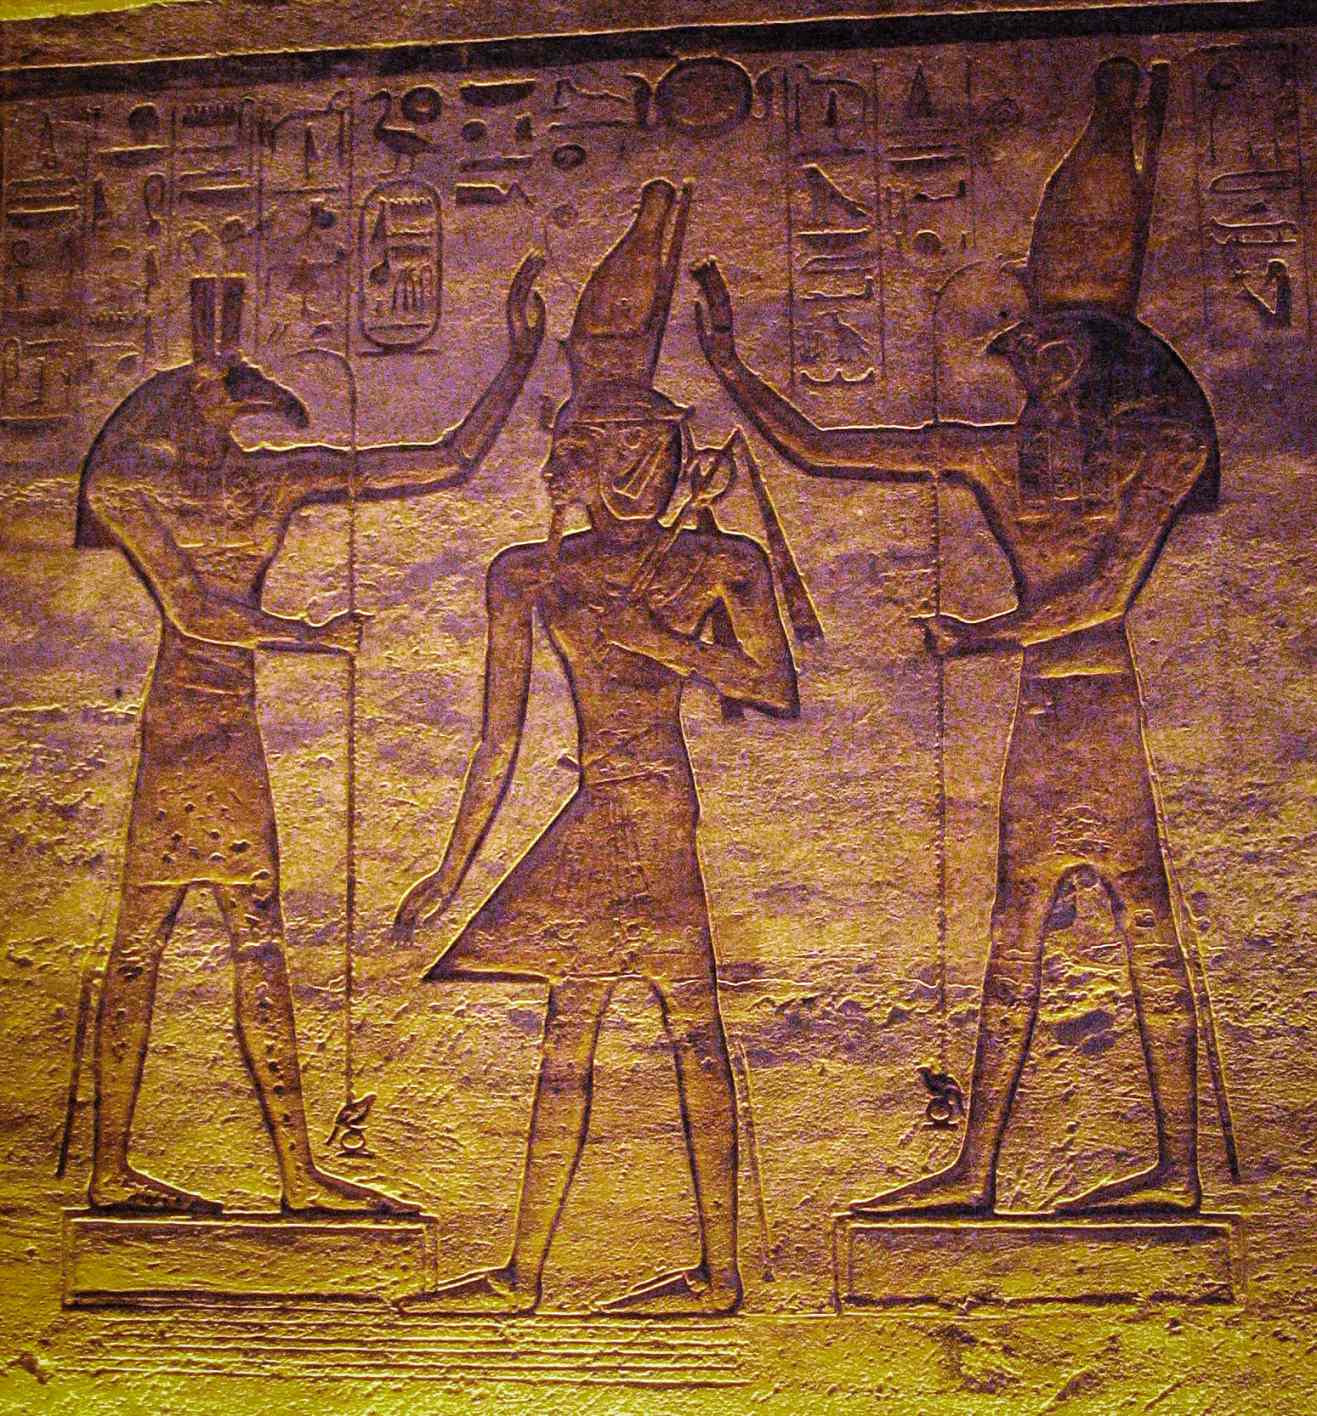 Set (Seth) e Hórus adorando Ramsés. O estudo atual mostra que a lua pode ter sido representada por Seth e a estrela variável Algol por Hórus no Calendário do Cairo.